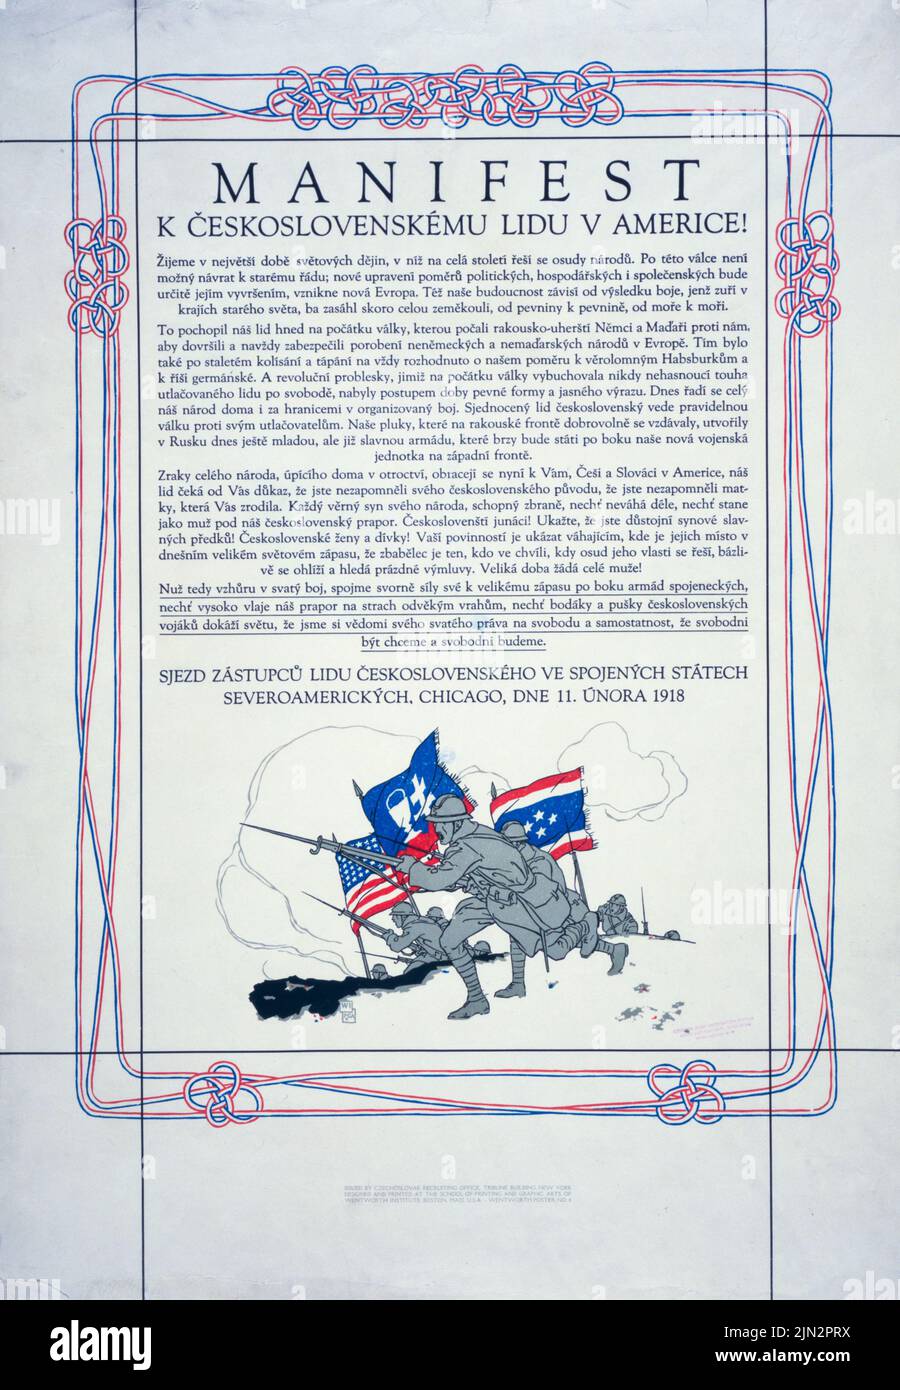 Manifest k Československému lidu gegen Americe! (Manifest für das tschechoslowakische Volk in Amerika!) (1918) Plakat aus der Zeit des Ersten Weltkriegs in der Tschechischen Republik von Vojtěch Preissig Stockfoto